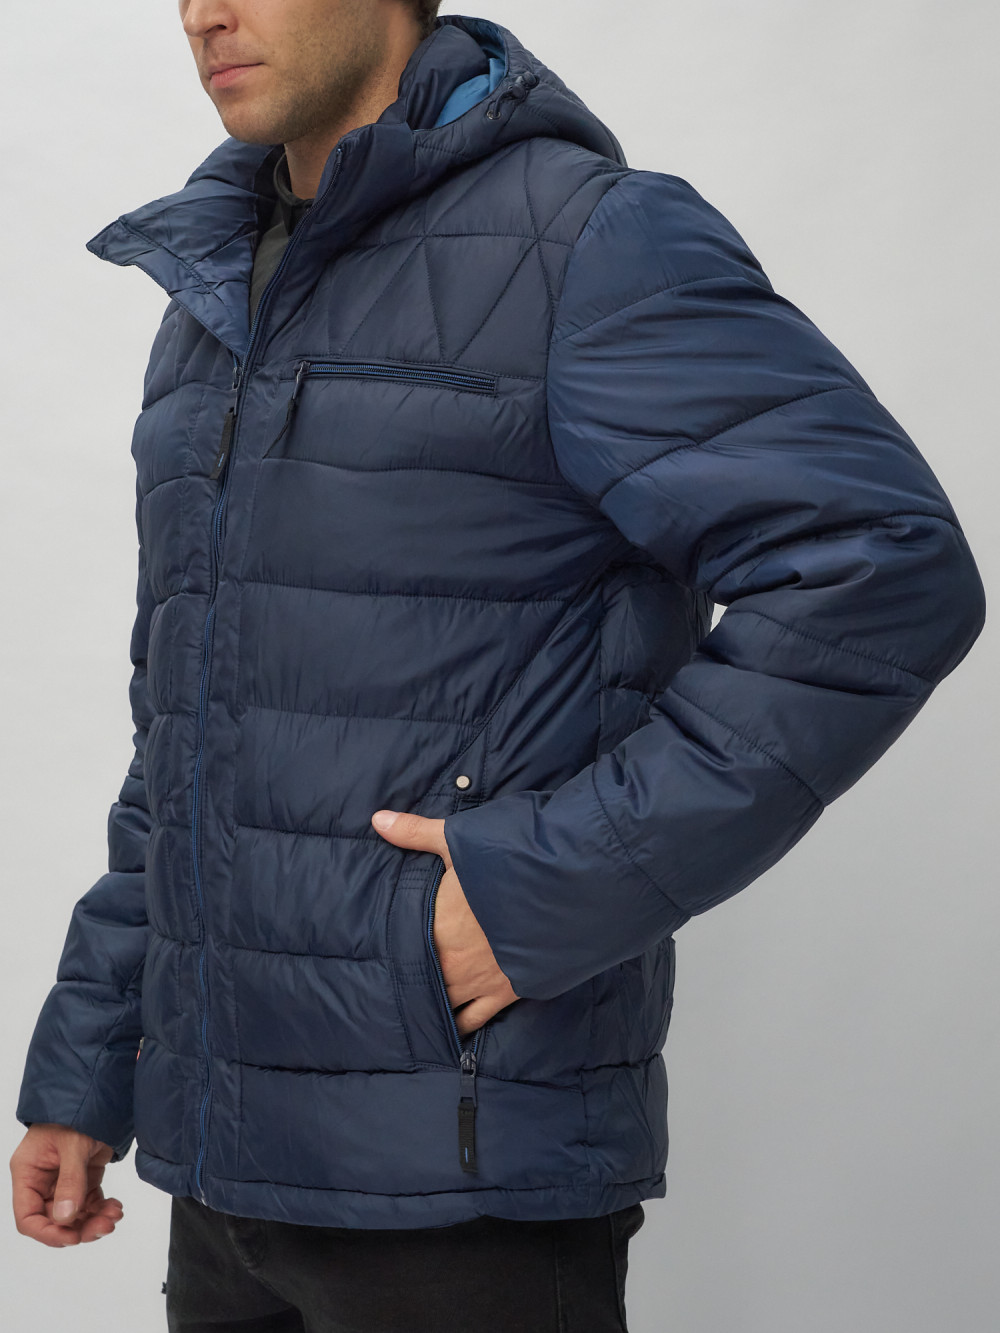 Купить куртку мужскую спортивную весеннюю оптом от производителя недорого в Москве 62187TS 1